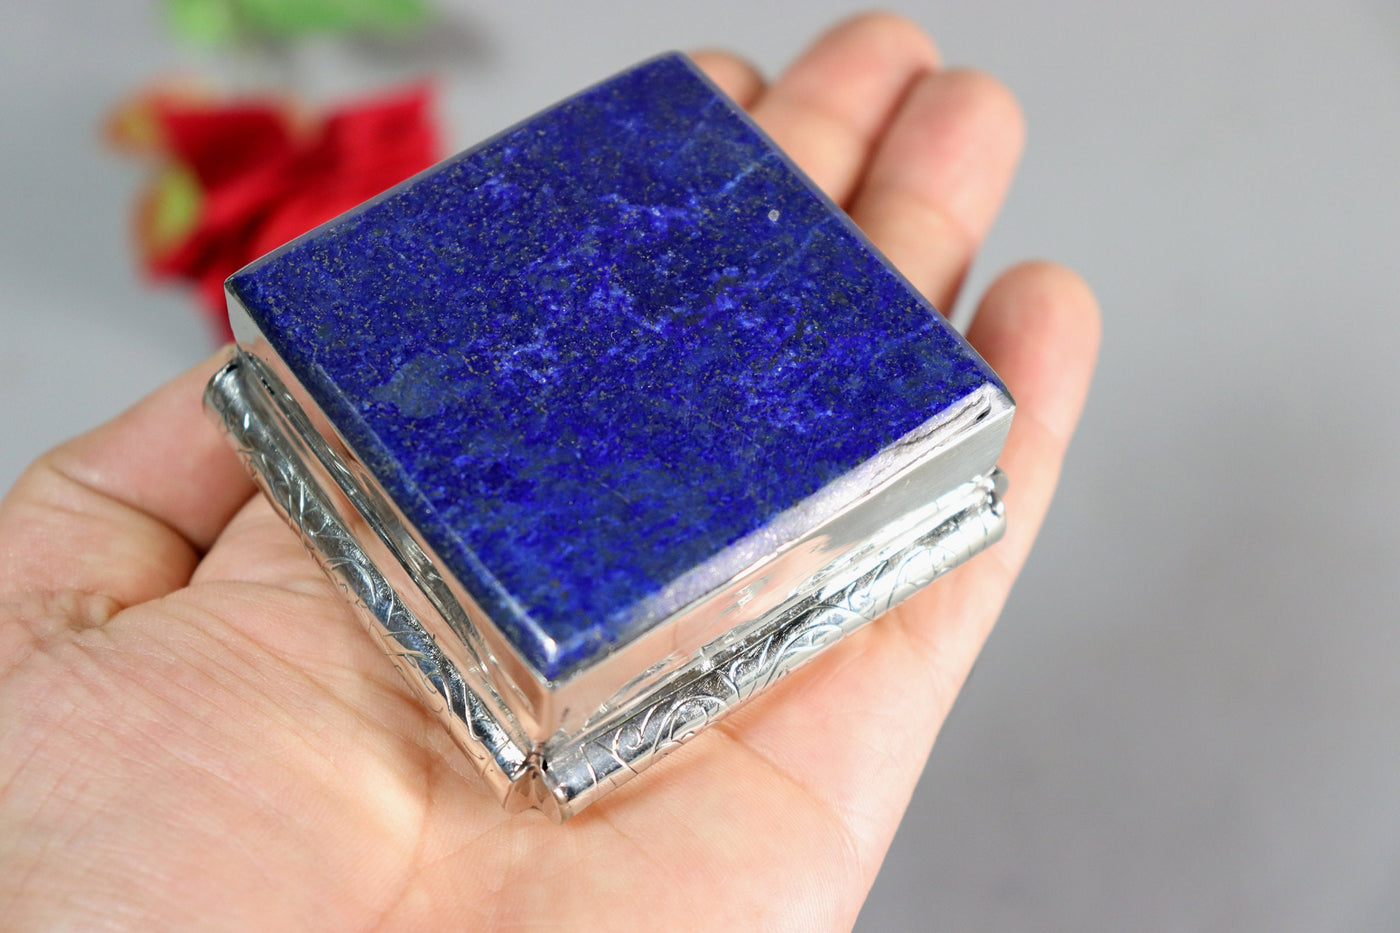 Extravagant handgefertigte messing  Lapis Lazuli -Edelstein büchse Schmuck Dose schatulle Kiste schmuckkiste Afghanistan  Nr-IT57-65  Orientsbazar   